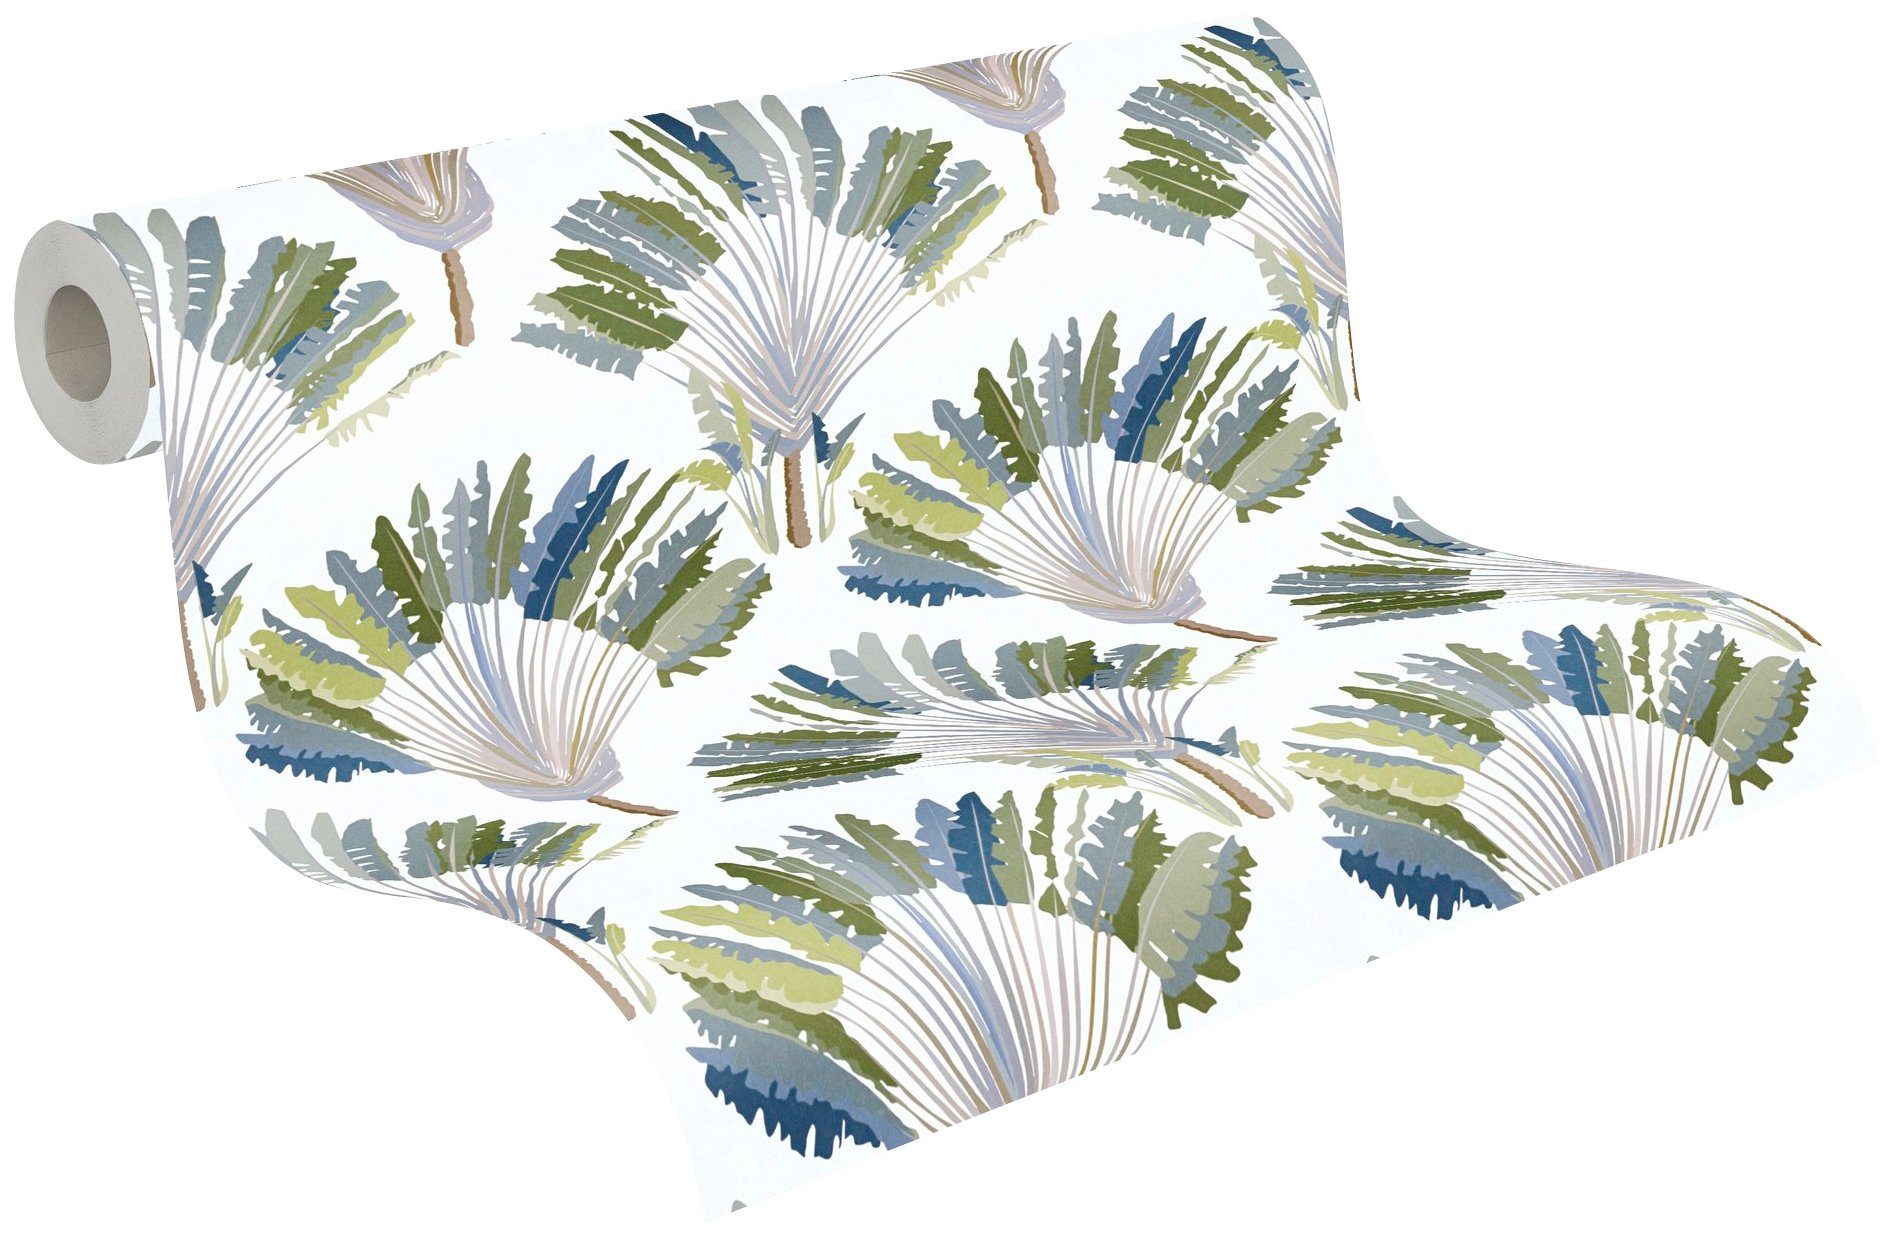 Architects Paper Vliestapete Jungle Chic, floral, Tapete botanisch, Palmentapete tropisch, Federn Dschungel glatt, grün/weiß/blau